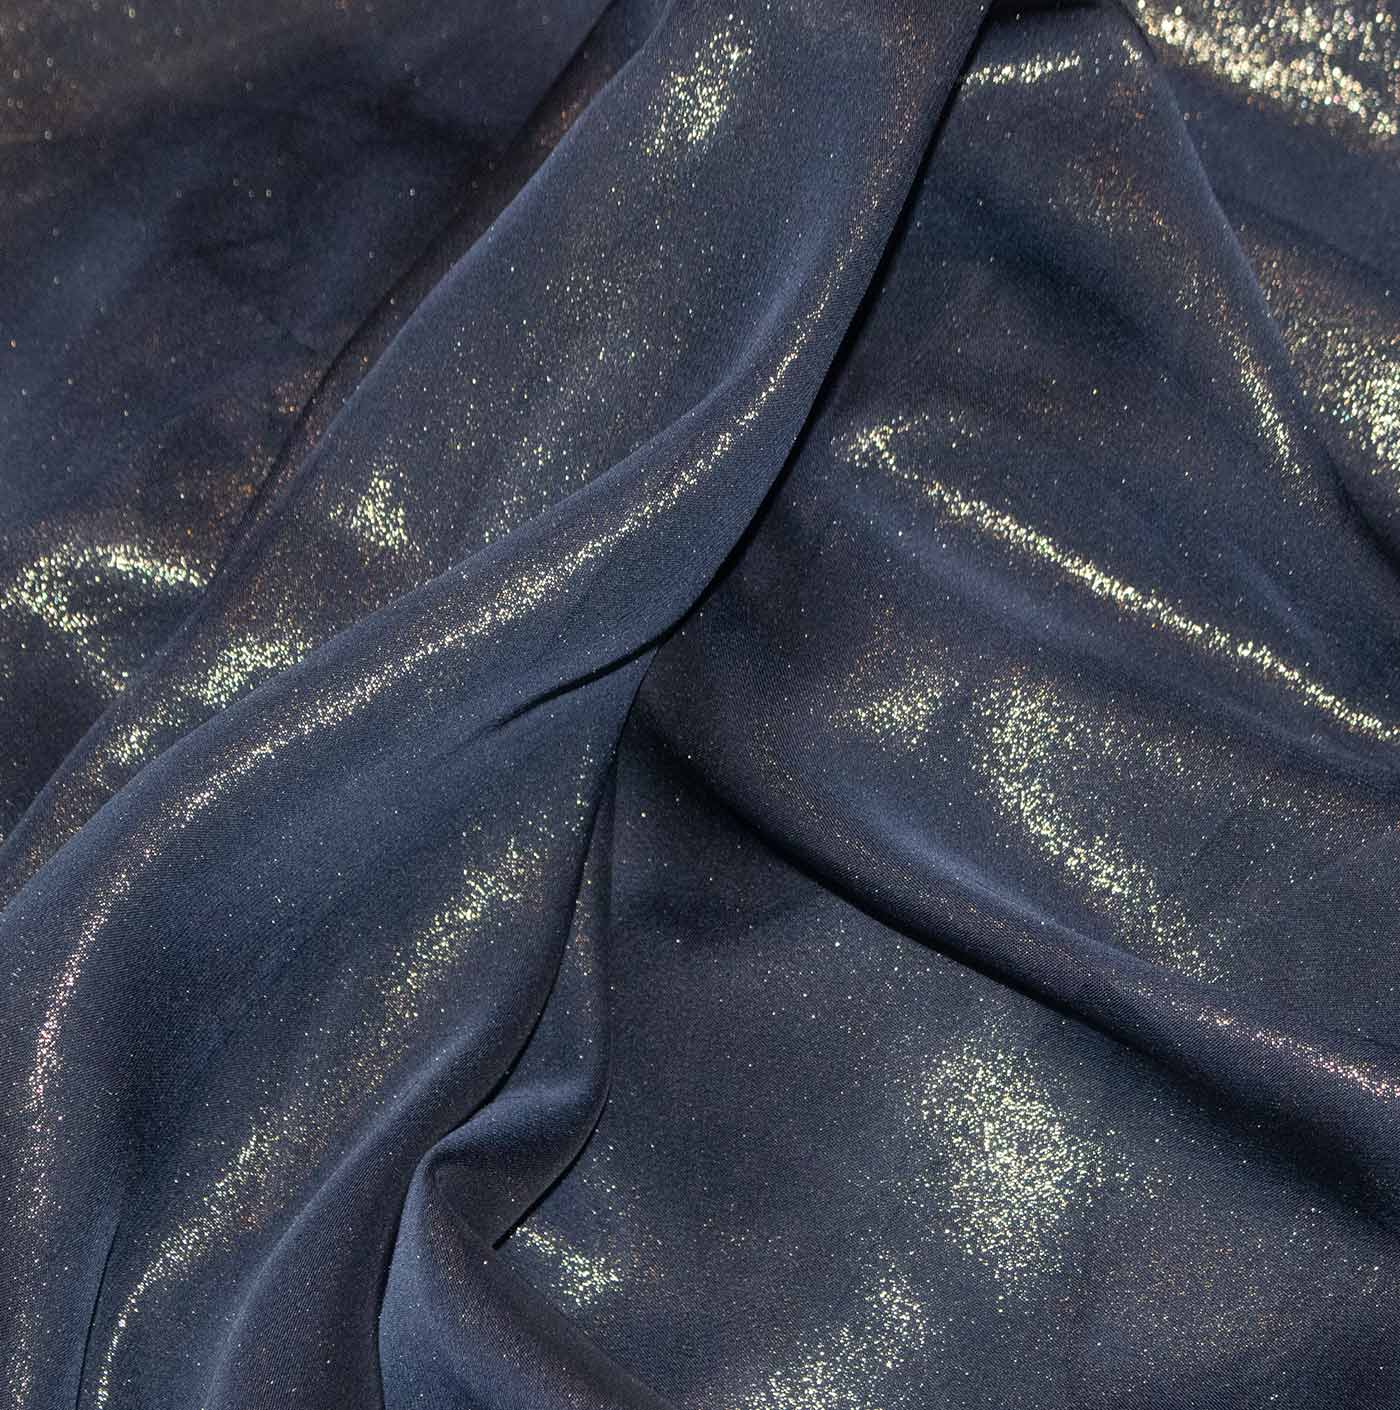 Navy Blue Chiffon Fabric